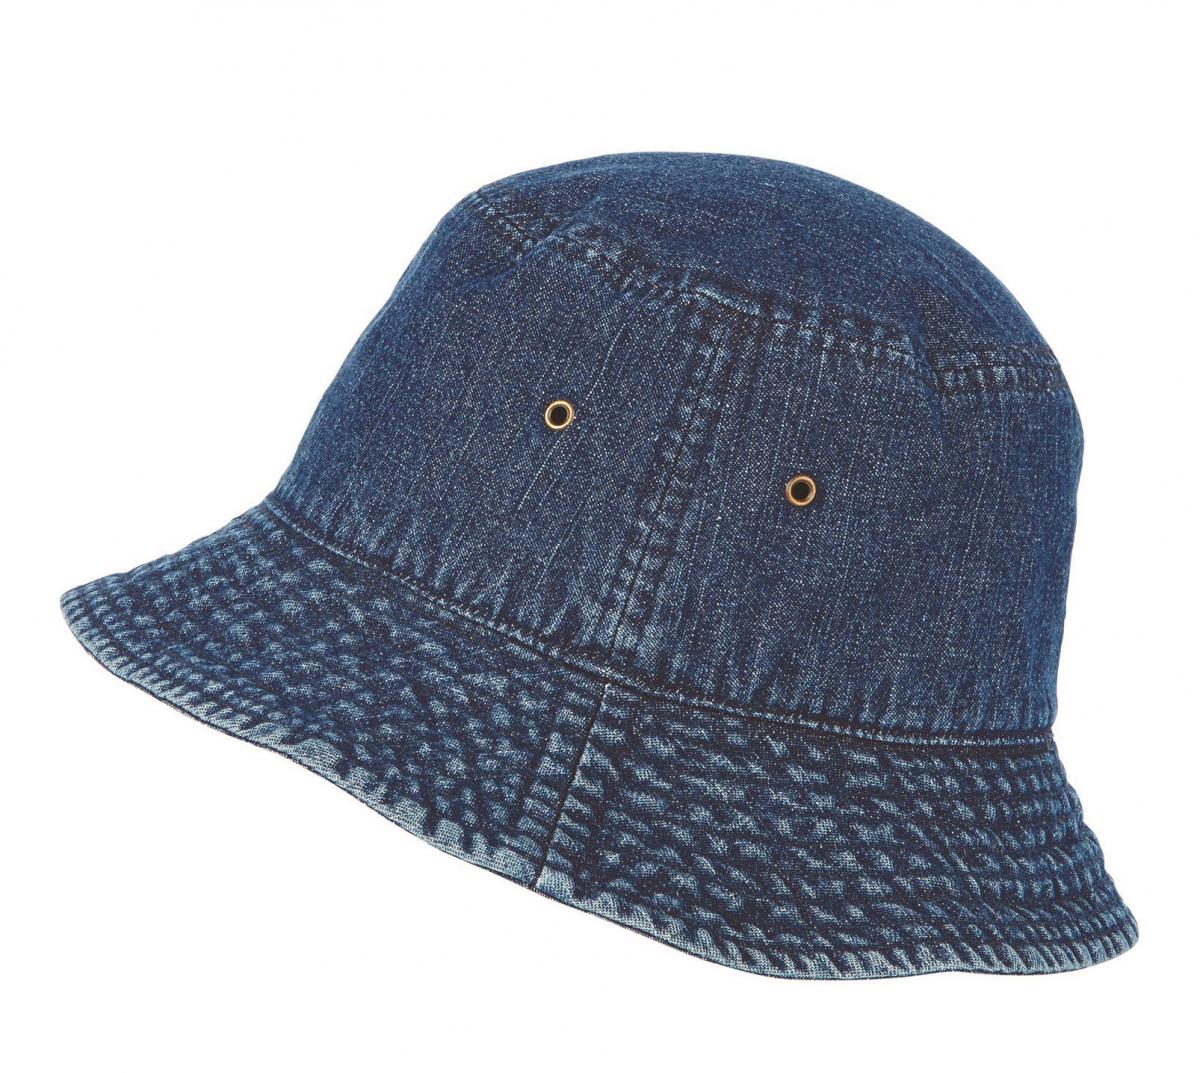 New Look, Dark Wash Denim Bucket Hat, £7.99